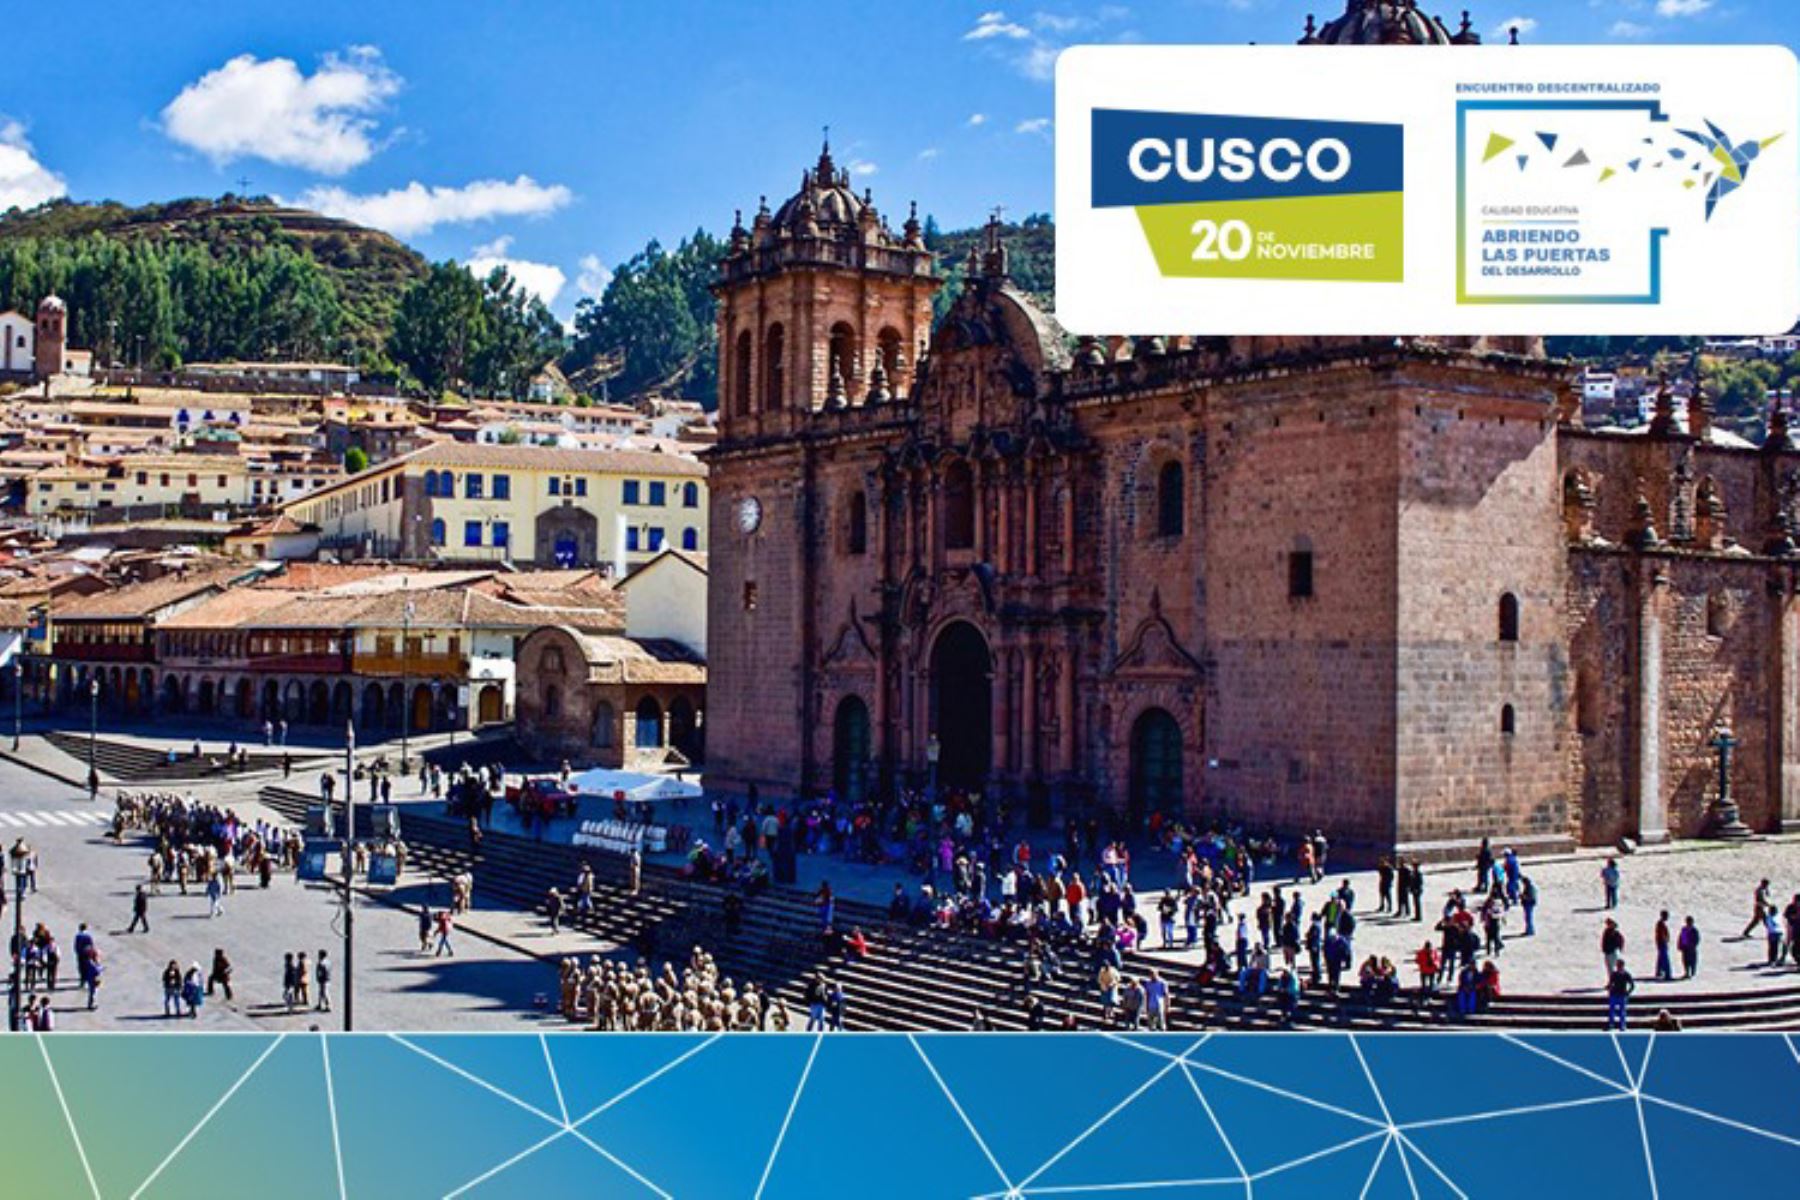 Universidades e institutos del sur mostrarán sus experiencias de calidad educativa en Cusco, en certamen organizado por el Sineace.